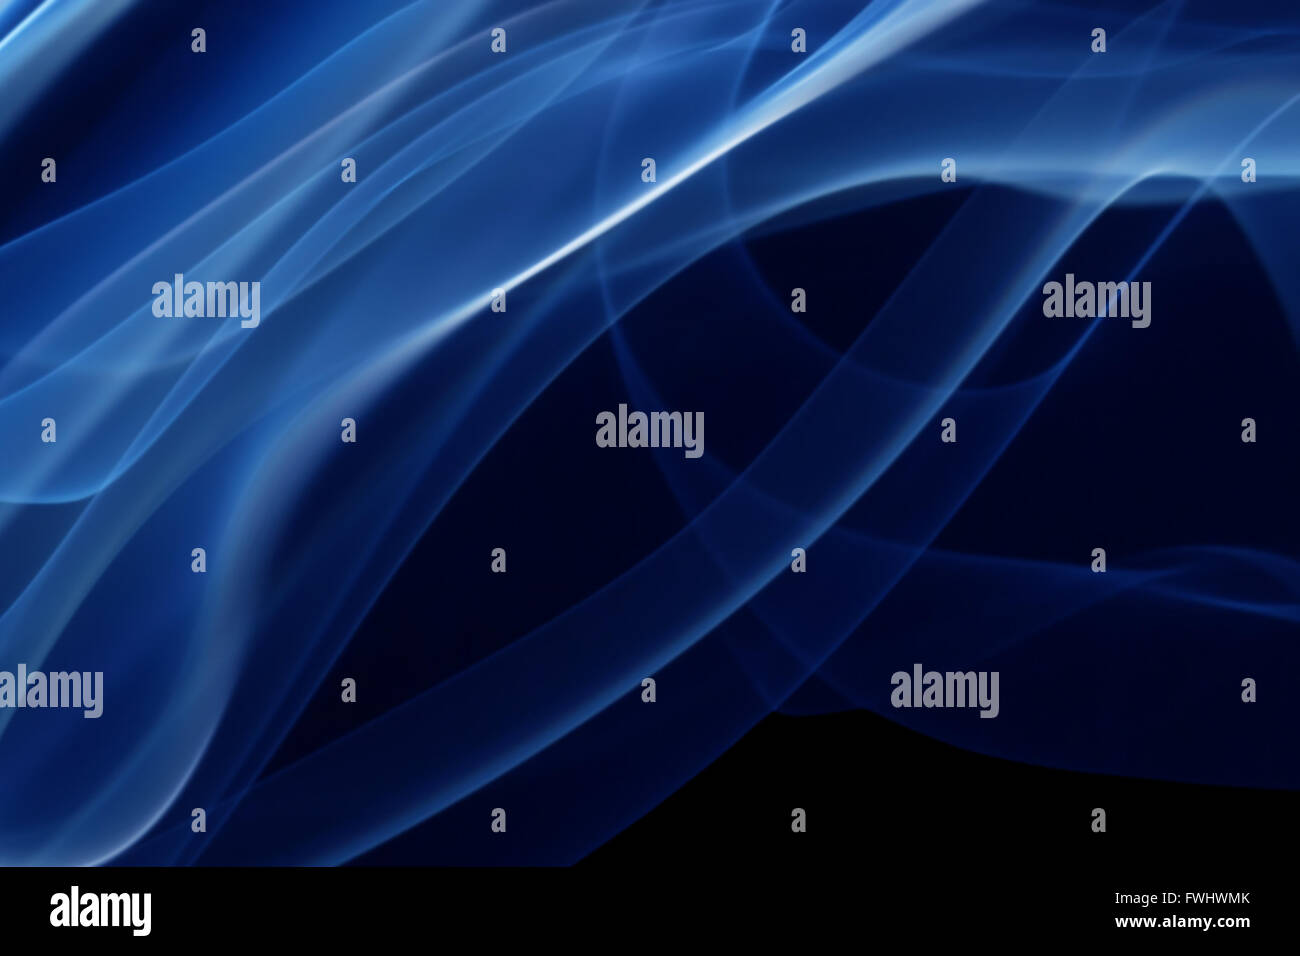 Navy blue background, rippled navy blue glitter sparkles and black spots  Stock Photo - Alamy